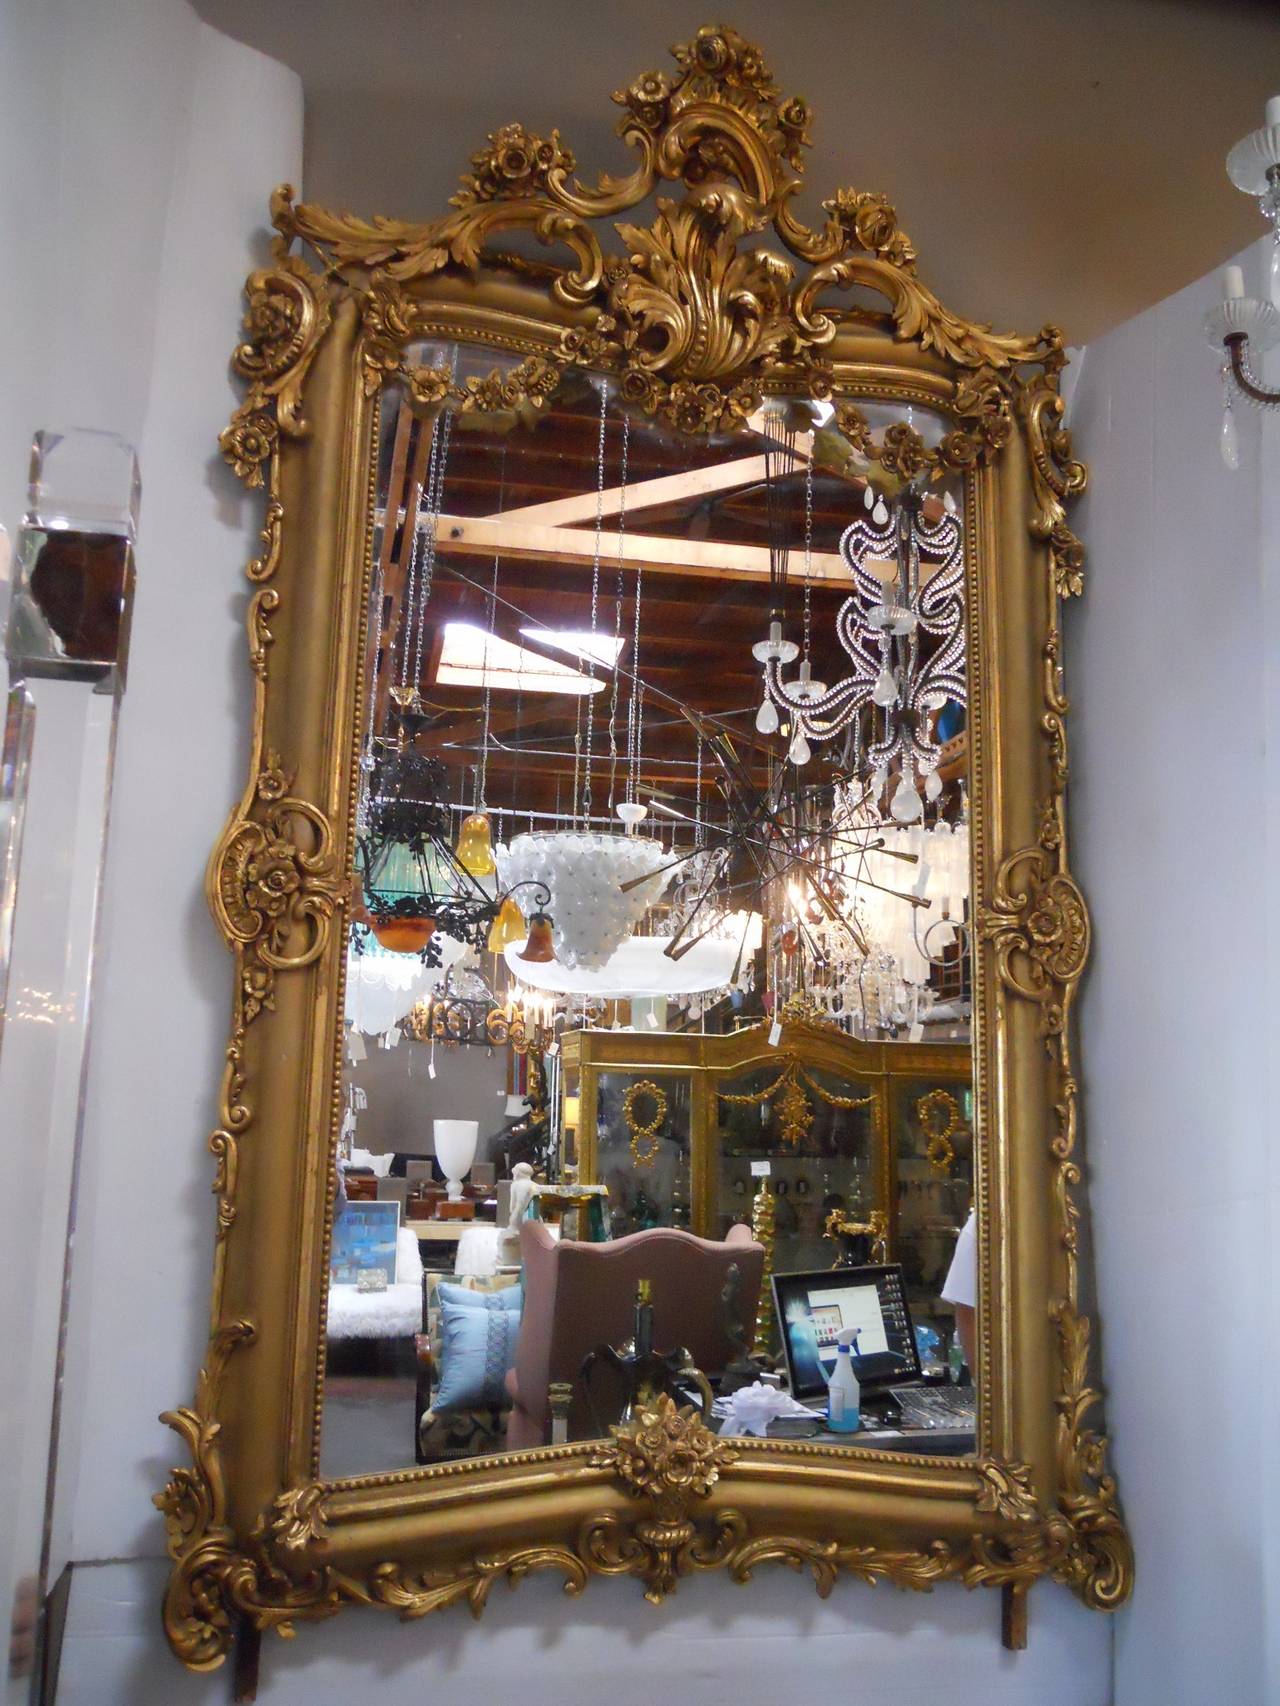 Grand French gilt mirror.
(Wood, plaster, guilt).